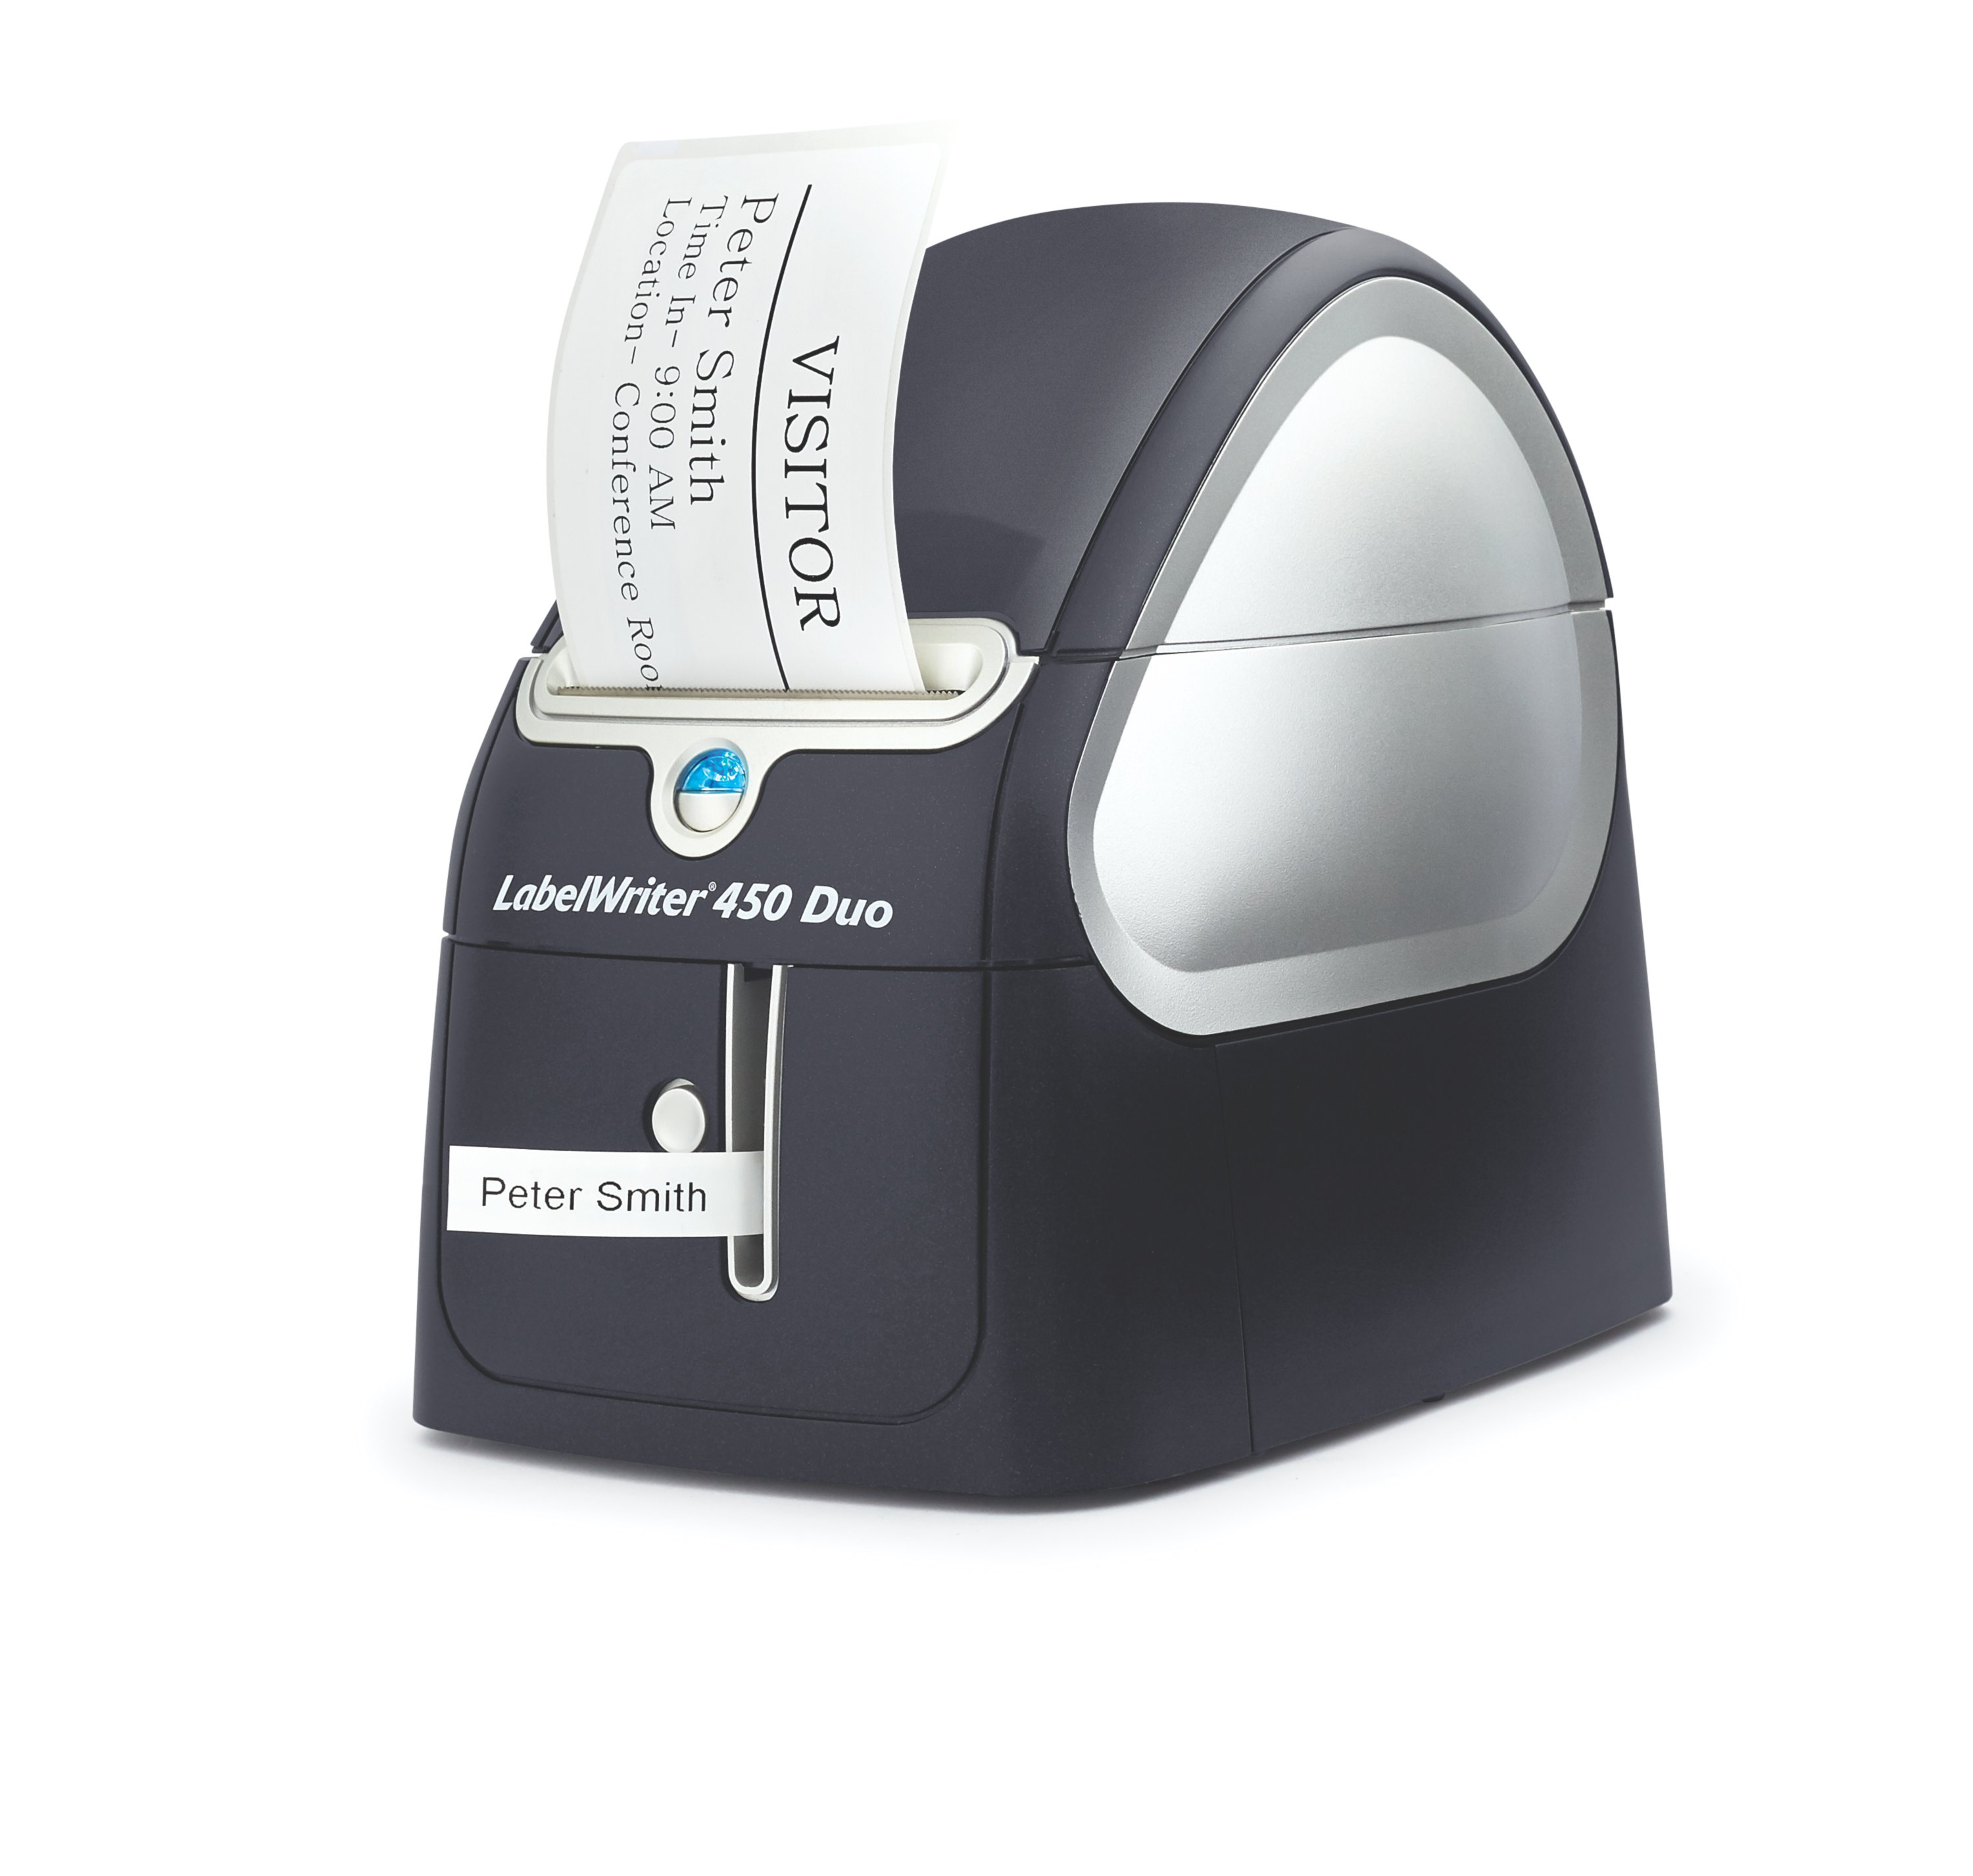 DYMO LabelWriter 450 Duo Thermal Label Printer | Dymo